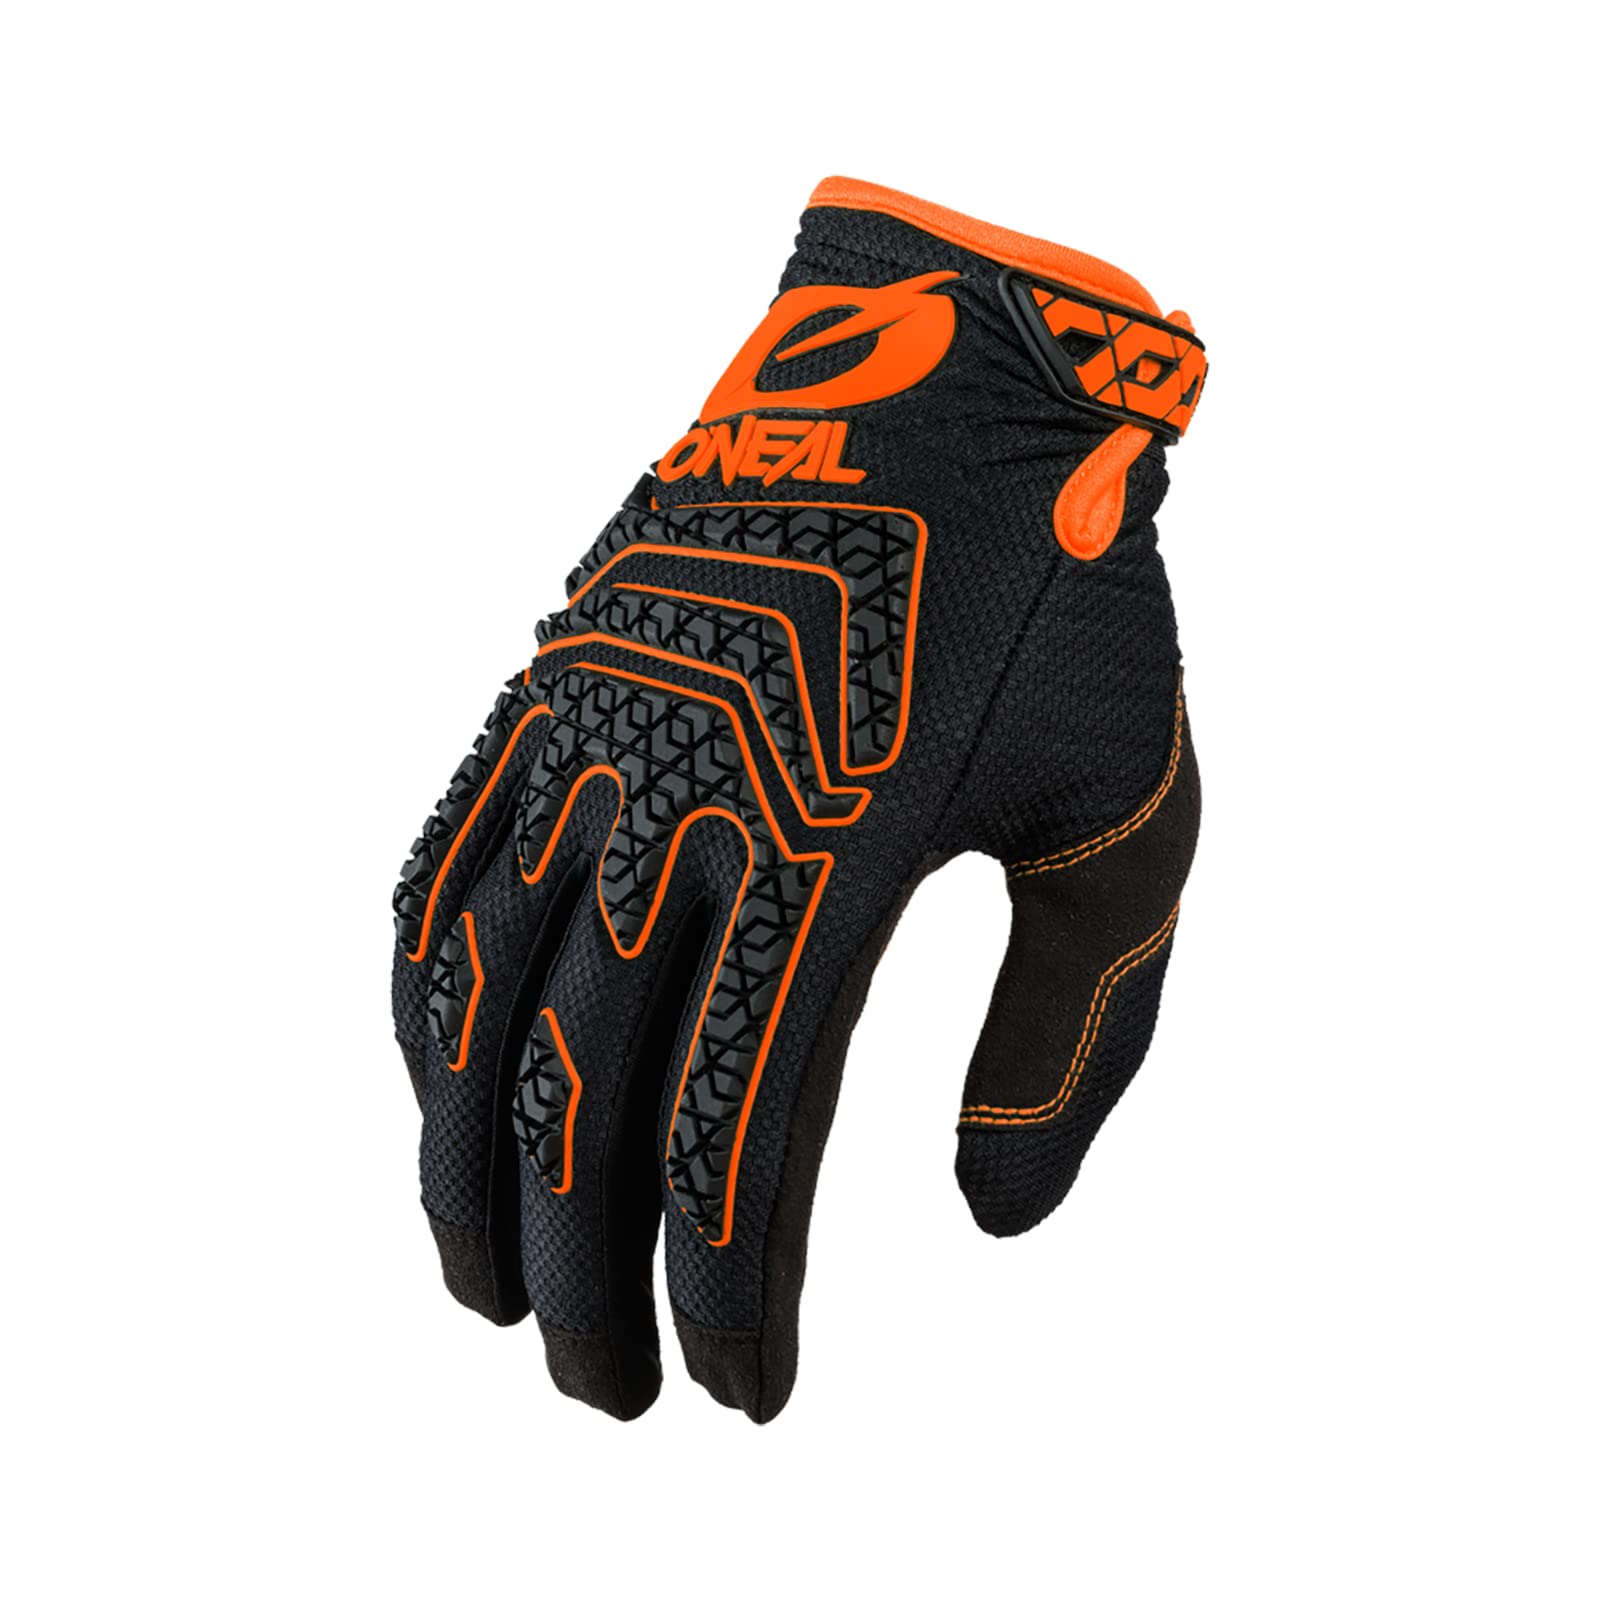 O'NEAL | Fahrrad- & Motocross-Handschuhe | MX MTB DH FR Downhill Freeride | Langlebige, Flexible Materialien, Silikonprint für Grip | Sniper Elite Glove | Erwachsene | Schwarz Orange | Größe L von O'NEAL